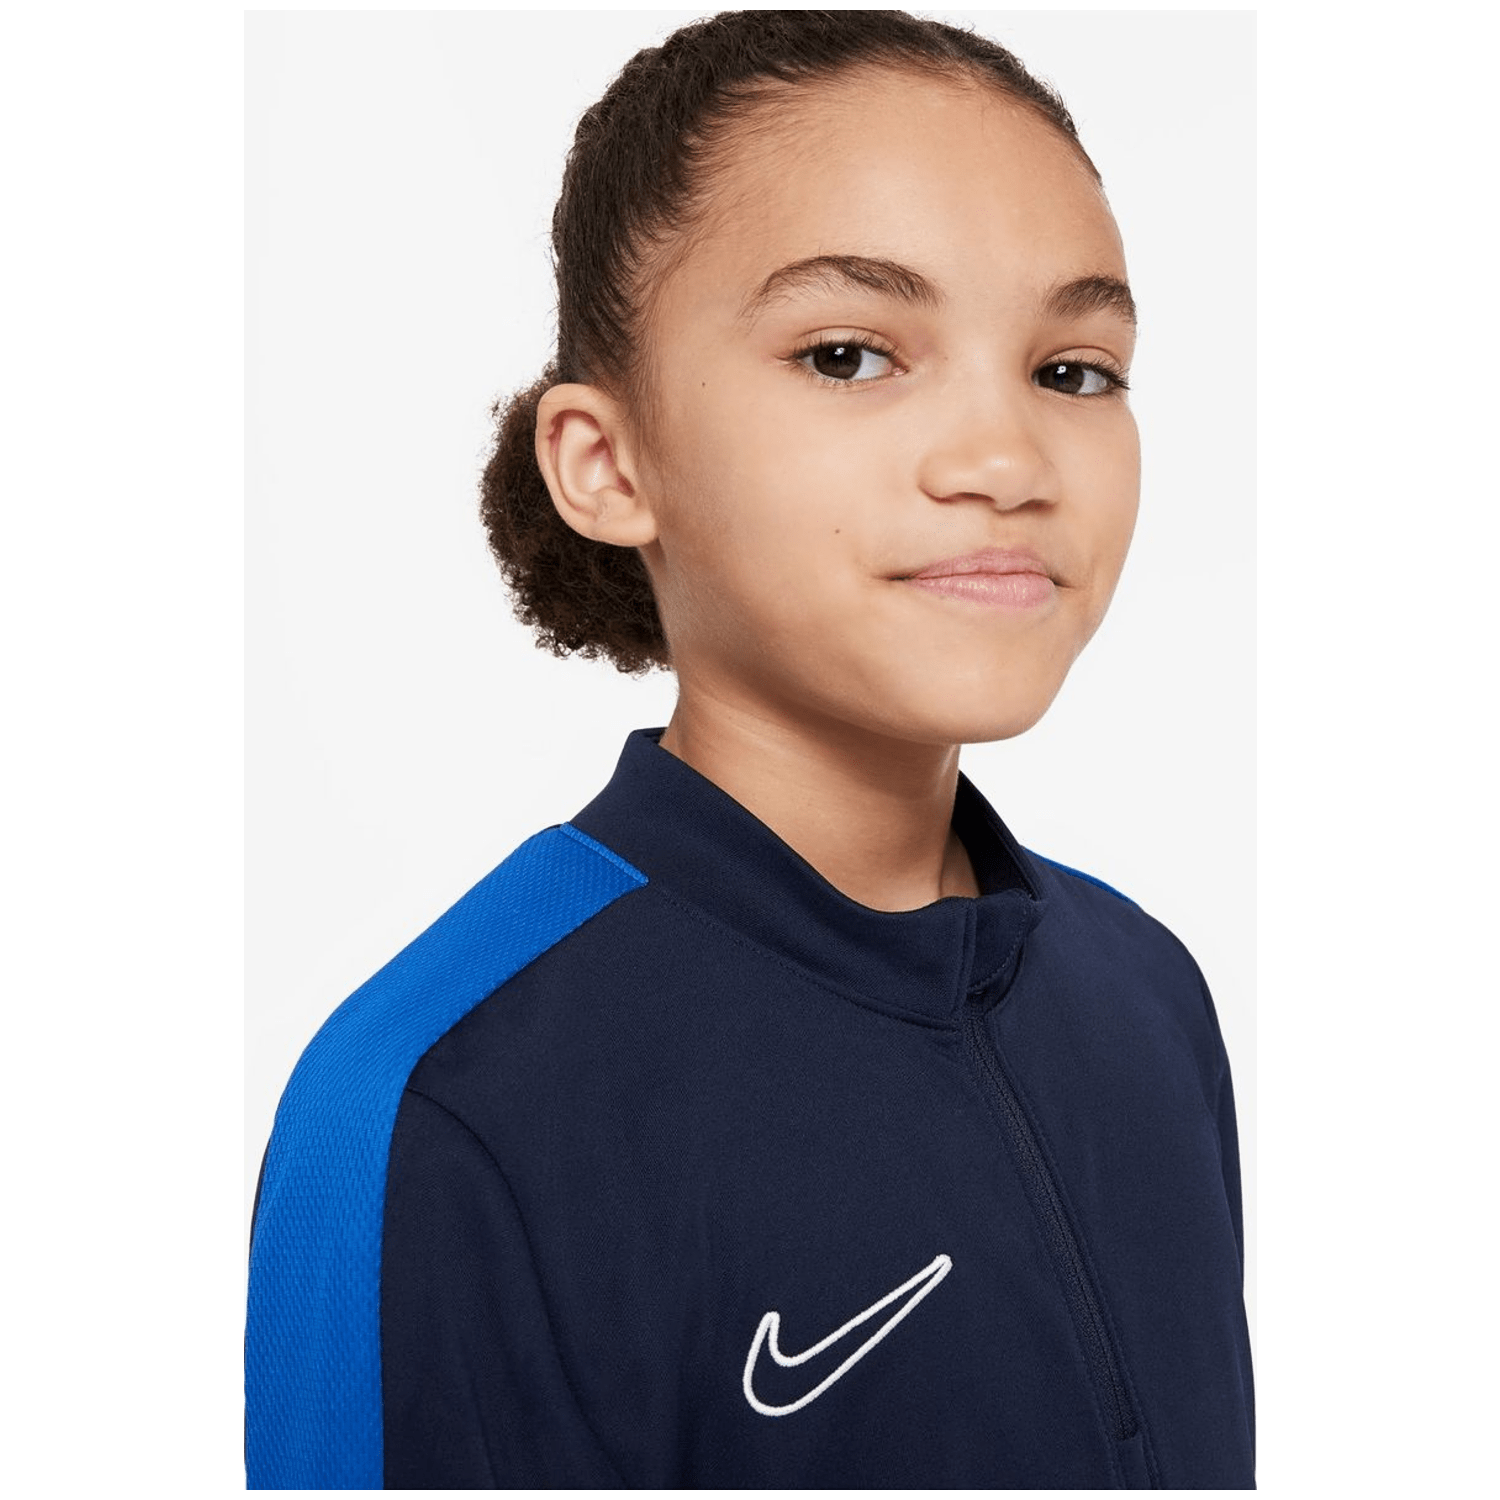 Nike Dri-FIT Academy Kinder Trikot